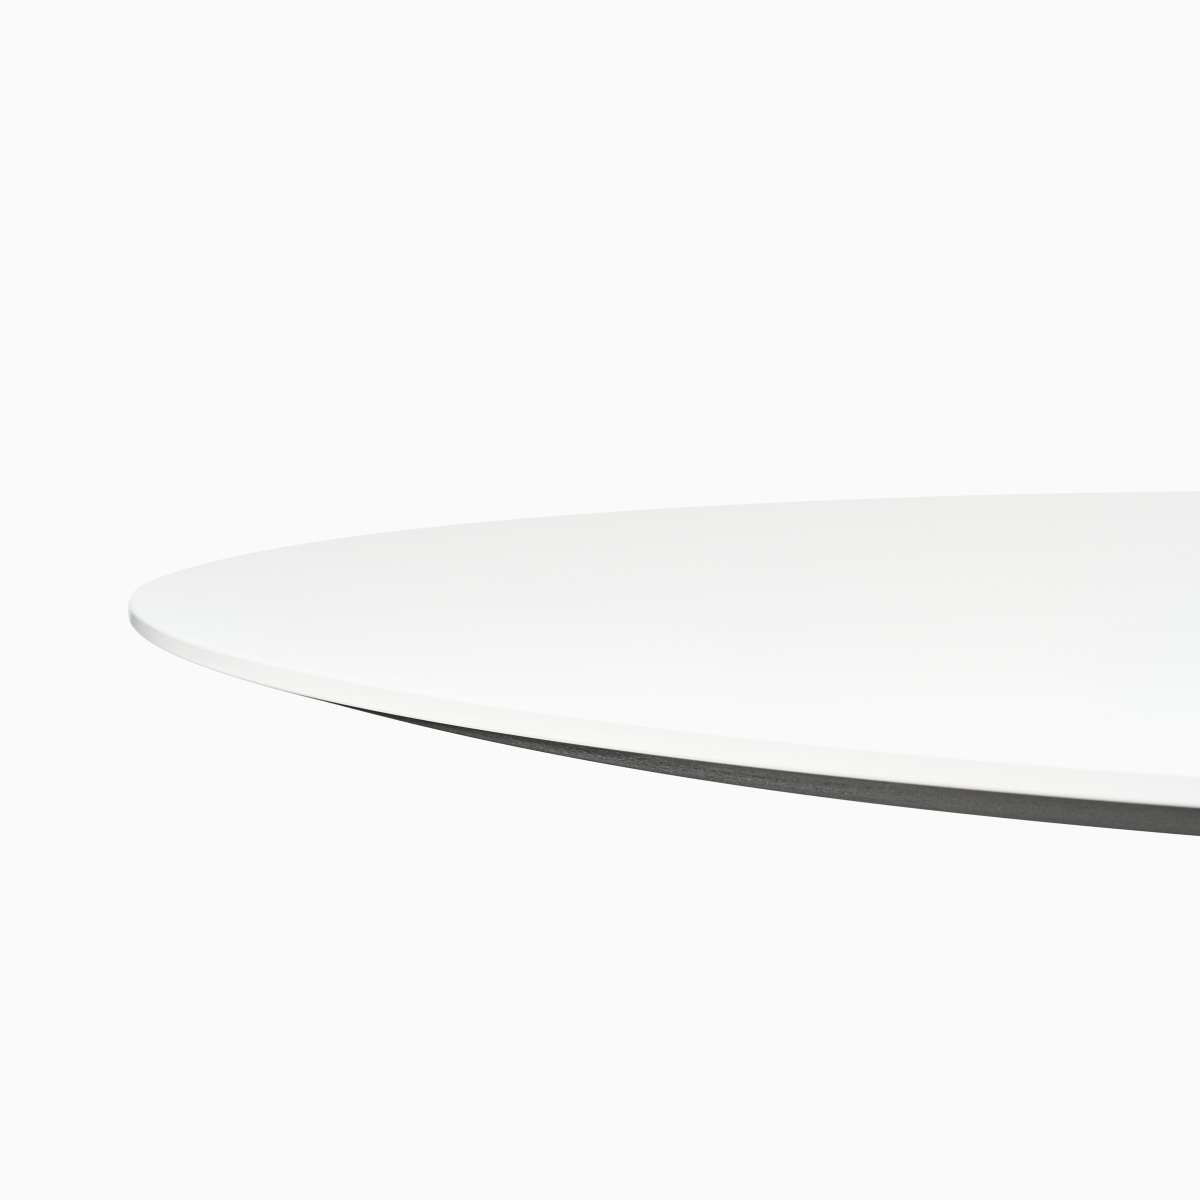 Tavolo Civic rotondo bianco con bordo a contrasto.